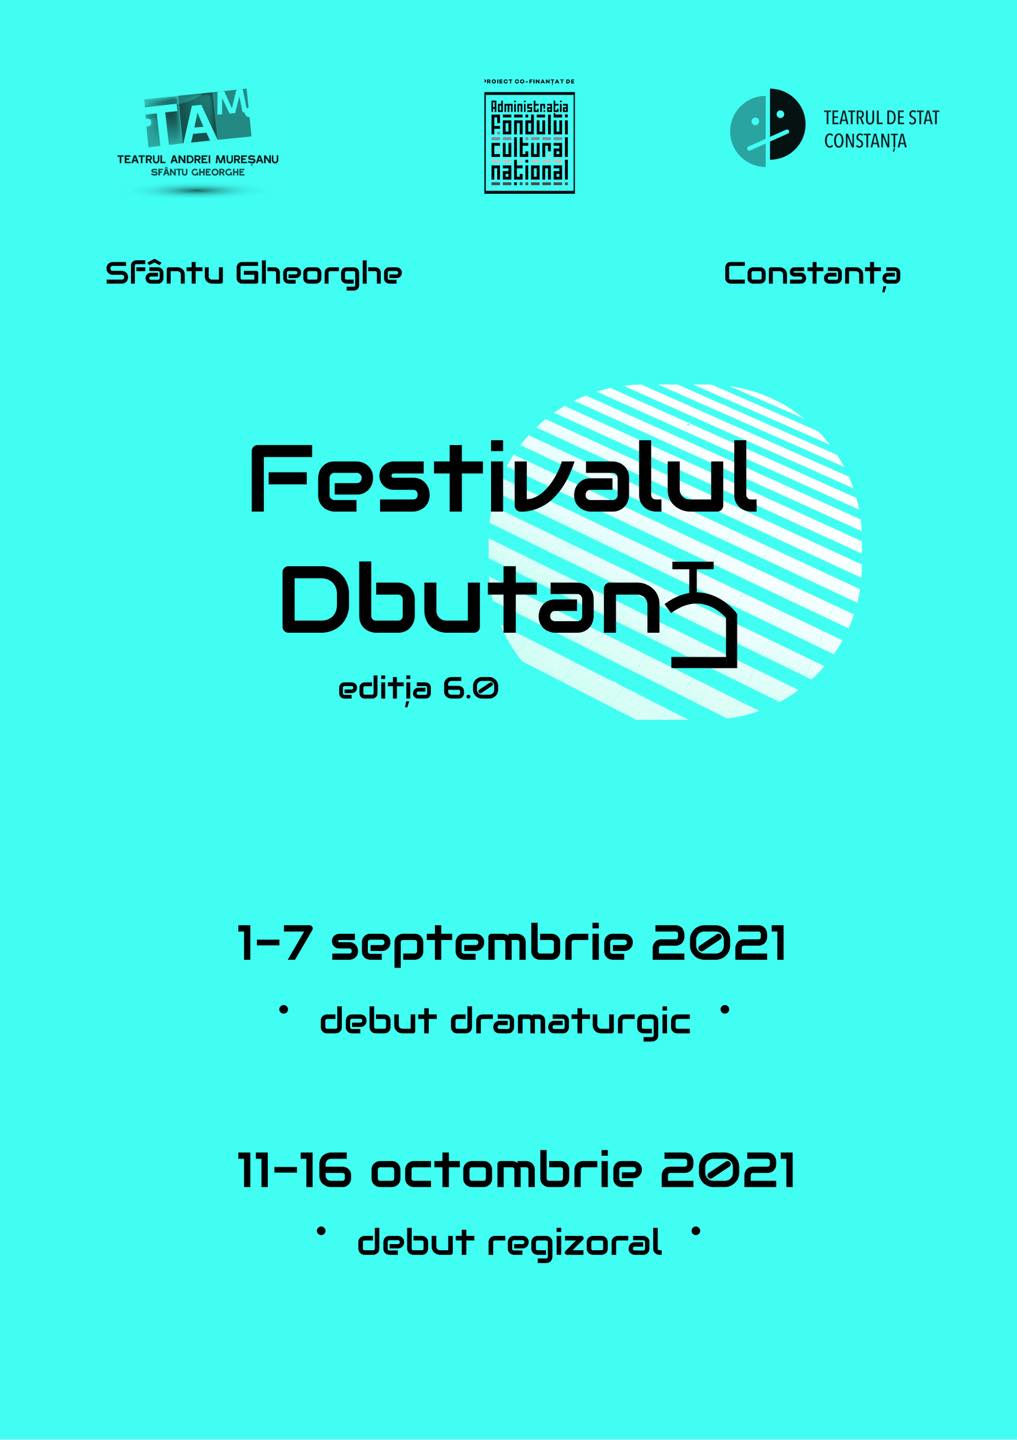 Festivalul DbutanT - ediția 6.